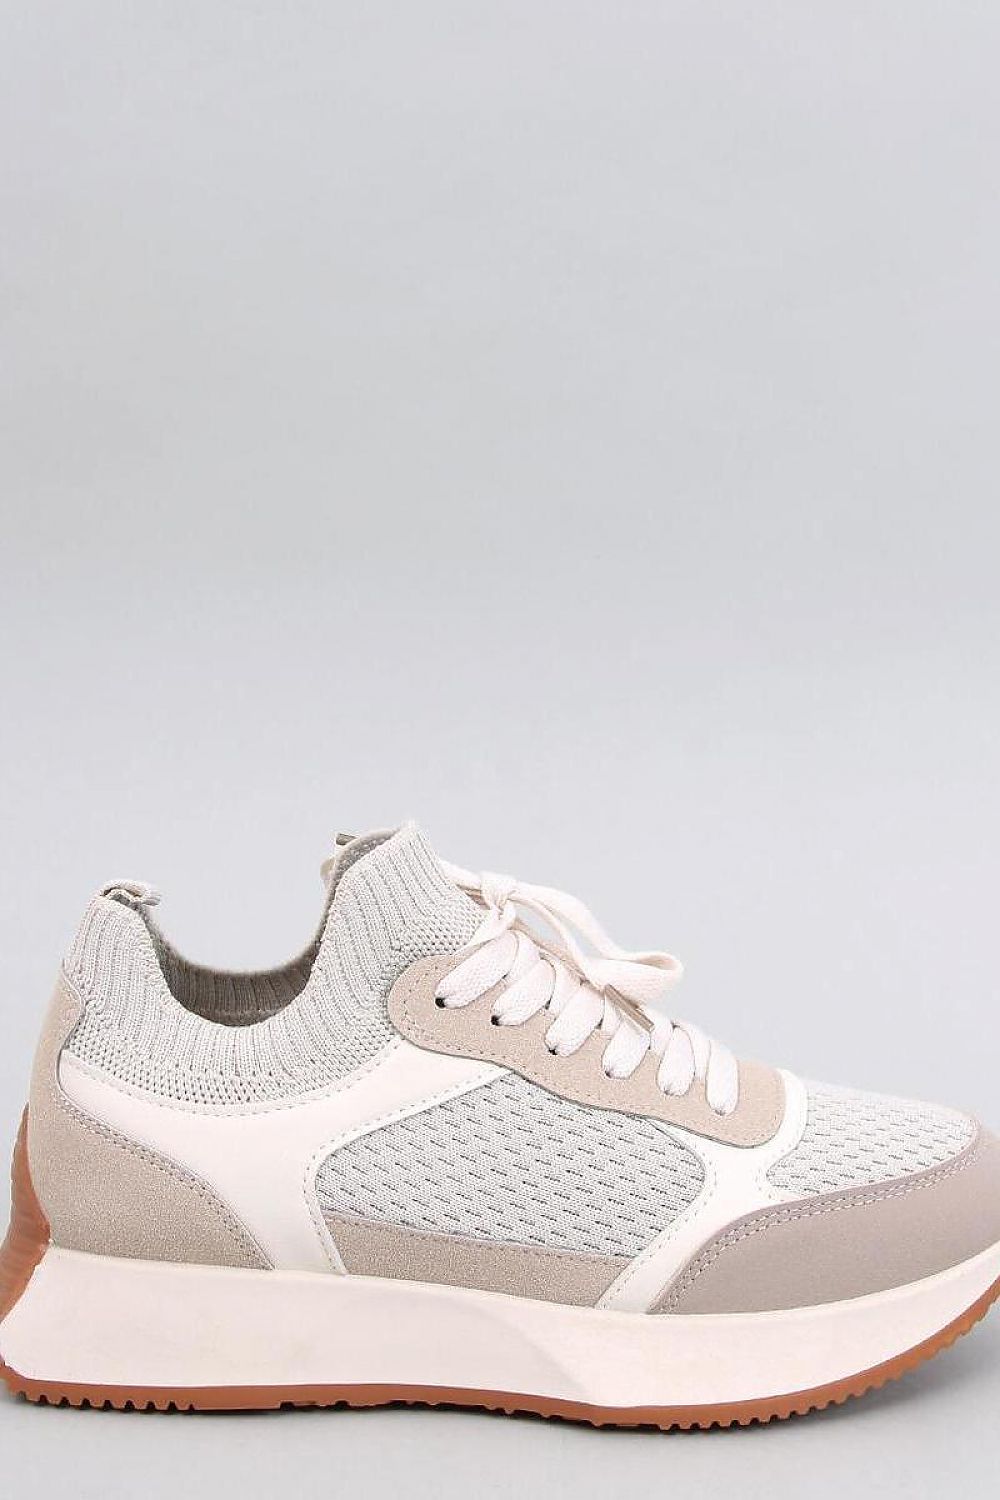 TEEK - Beige Lifted Sock Laced Sneakers SHOES TEEK MH 6.5  